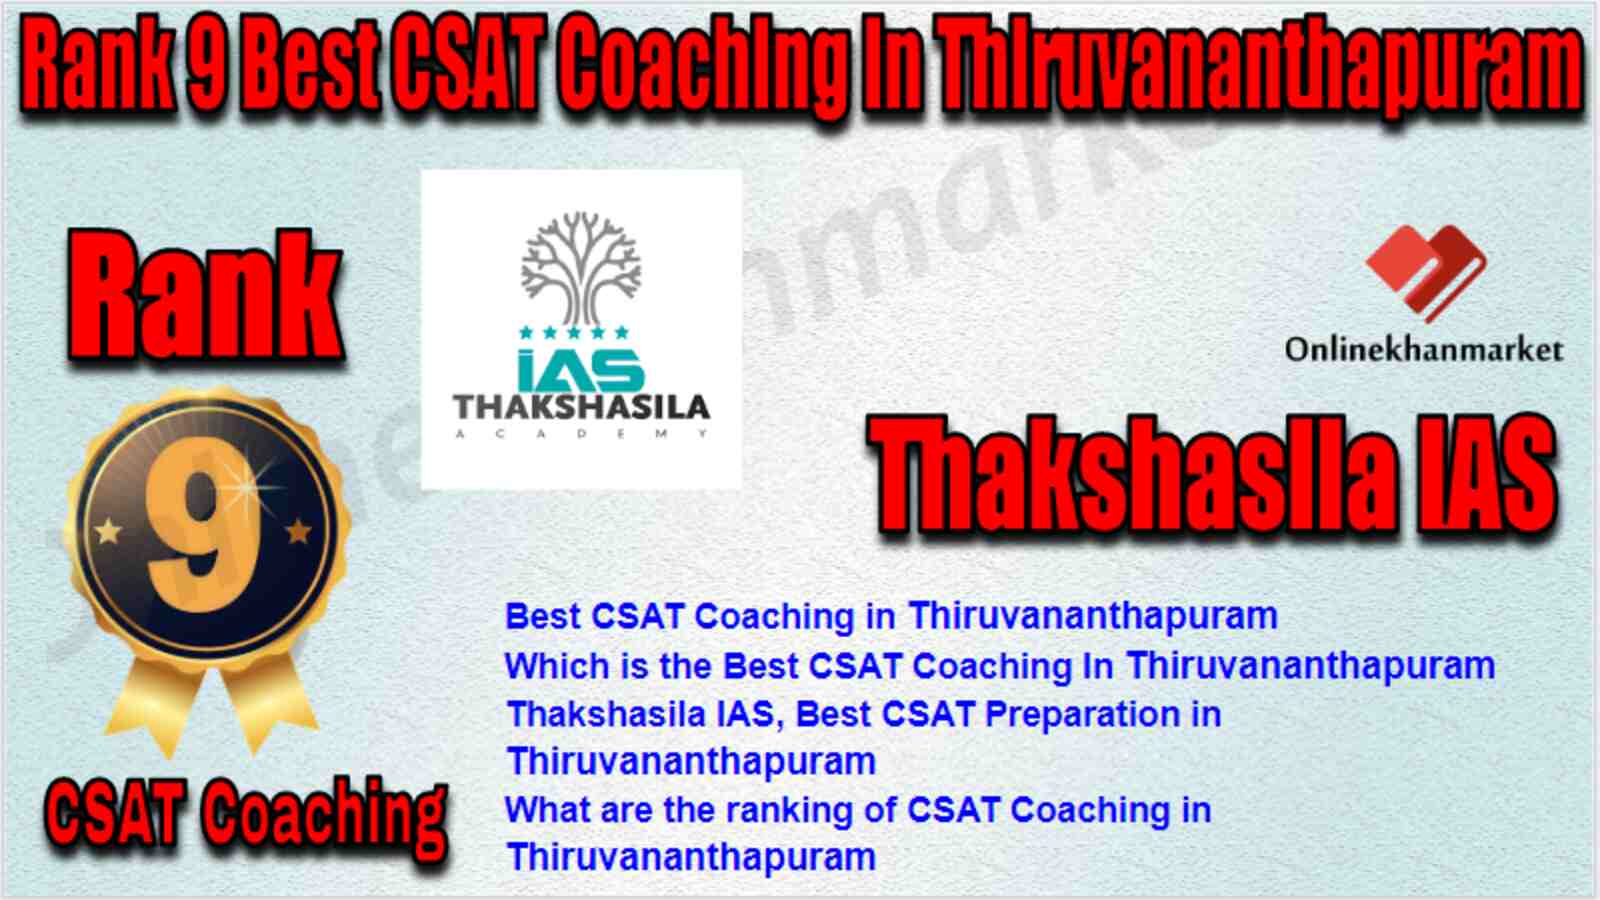 Rank 9 Best CSAT Coaching in Thiruvananthapuram